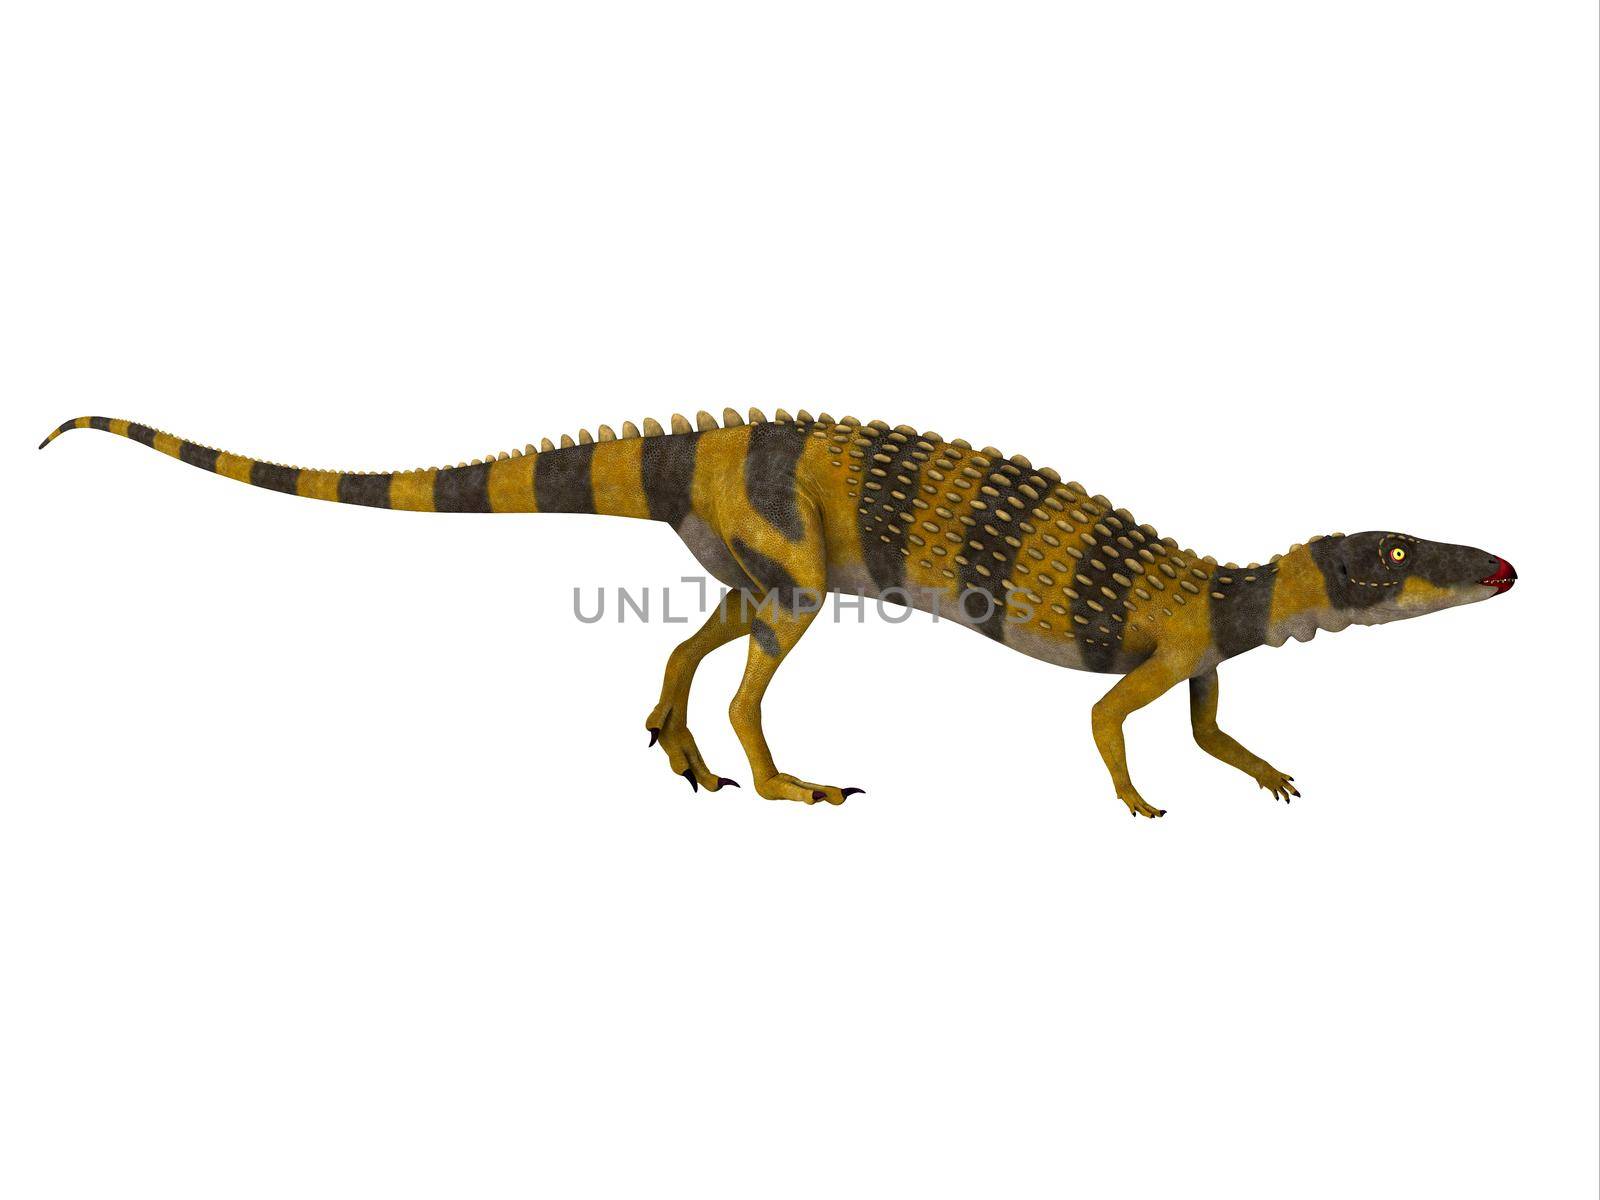 Scutellosaurus Dinosaur Walking by Catmando